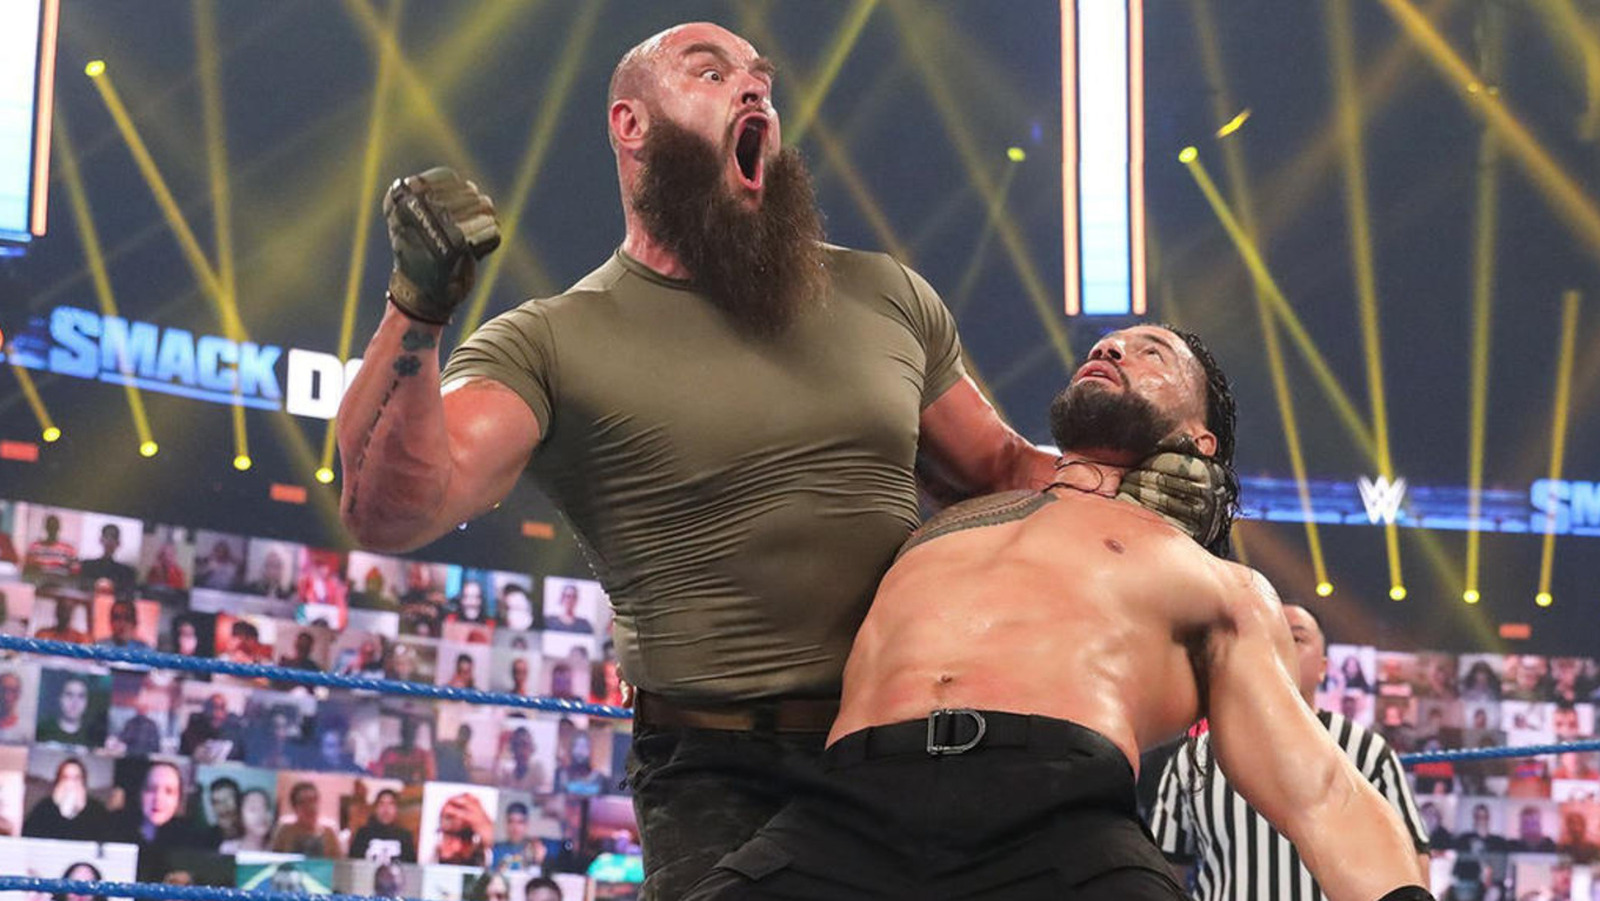 La estrella de la WWE Braun Strowman dice que 'nunca ha terminado' con Roman Reigns